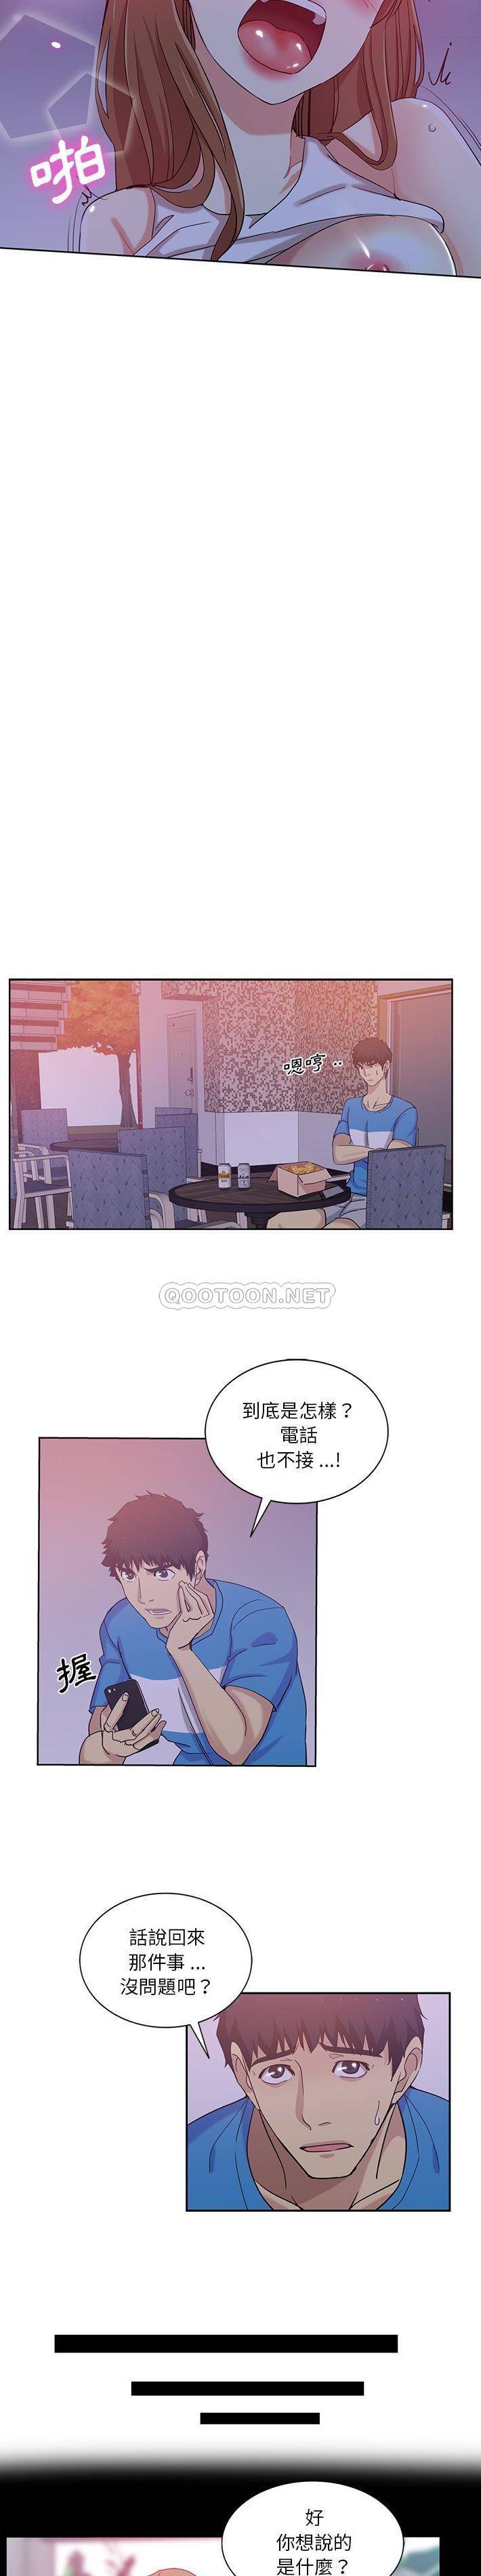 韩国污漫画 危險純友誼 第22话 5